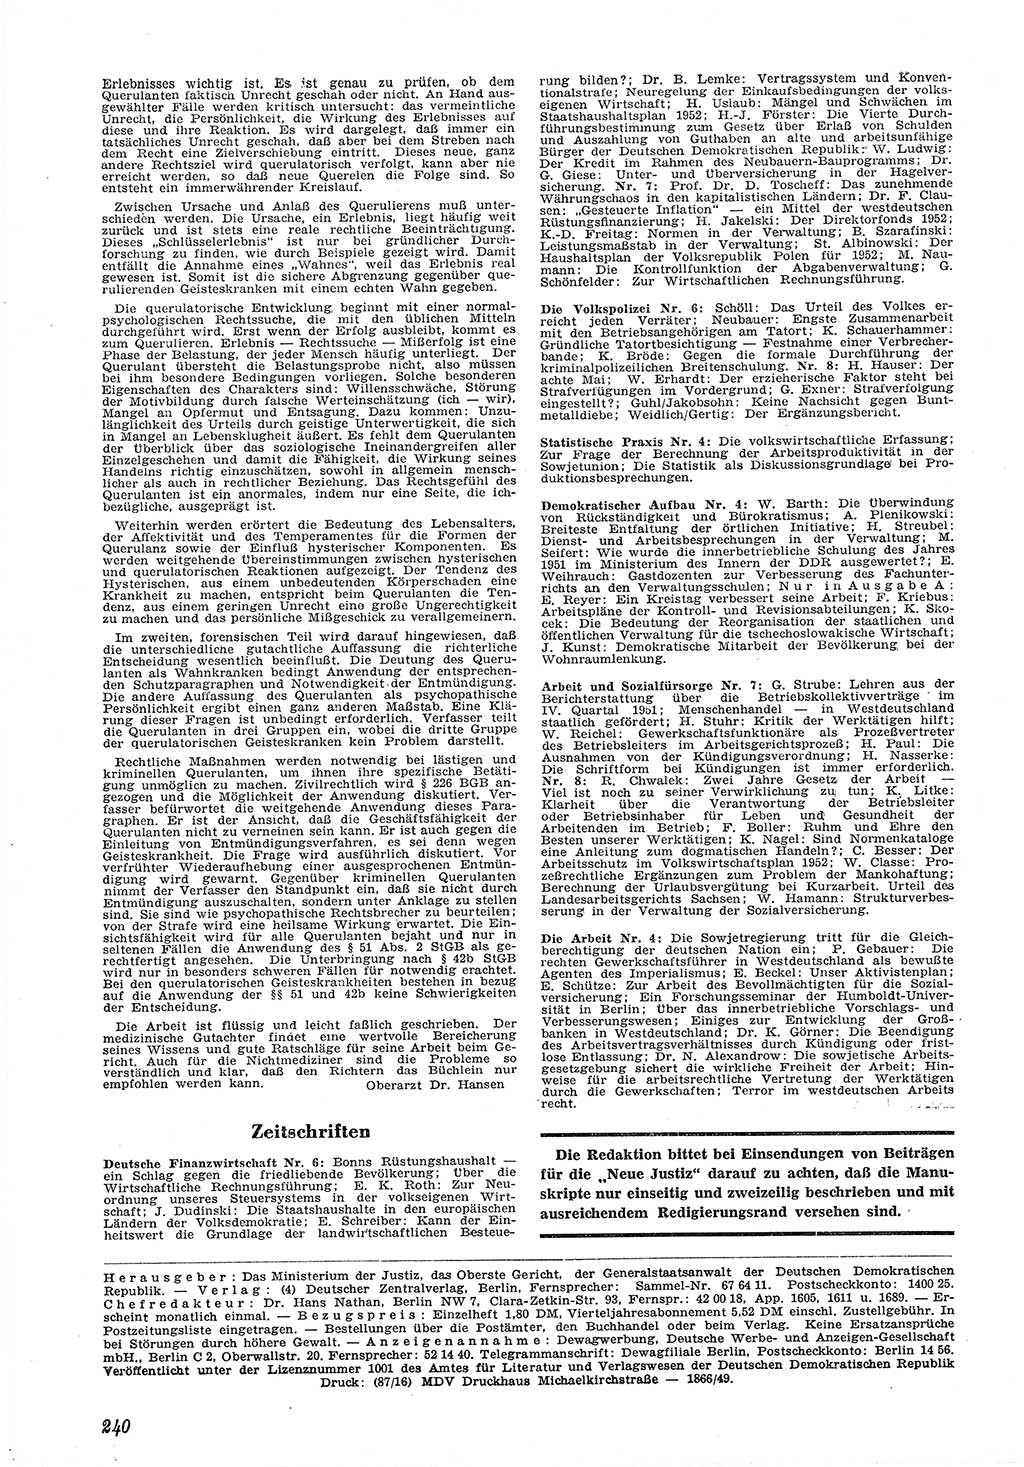 Neue Justiz (NJ), Zeitschrift für Recht und Rechtswissenschaft [Deutsche Demokratische Republik (DDR)], 6. Jahrgang 1952, Seite 240 (NJ DDR 1952, S. 240)